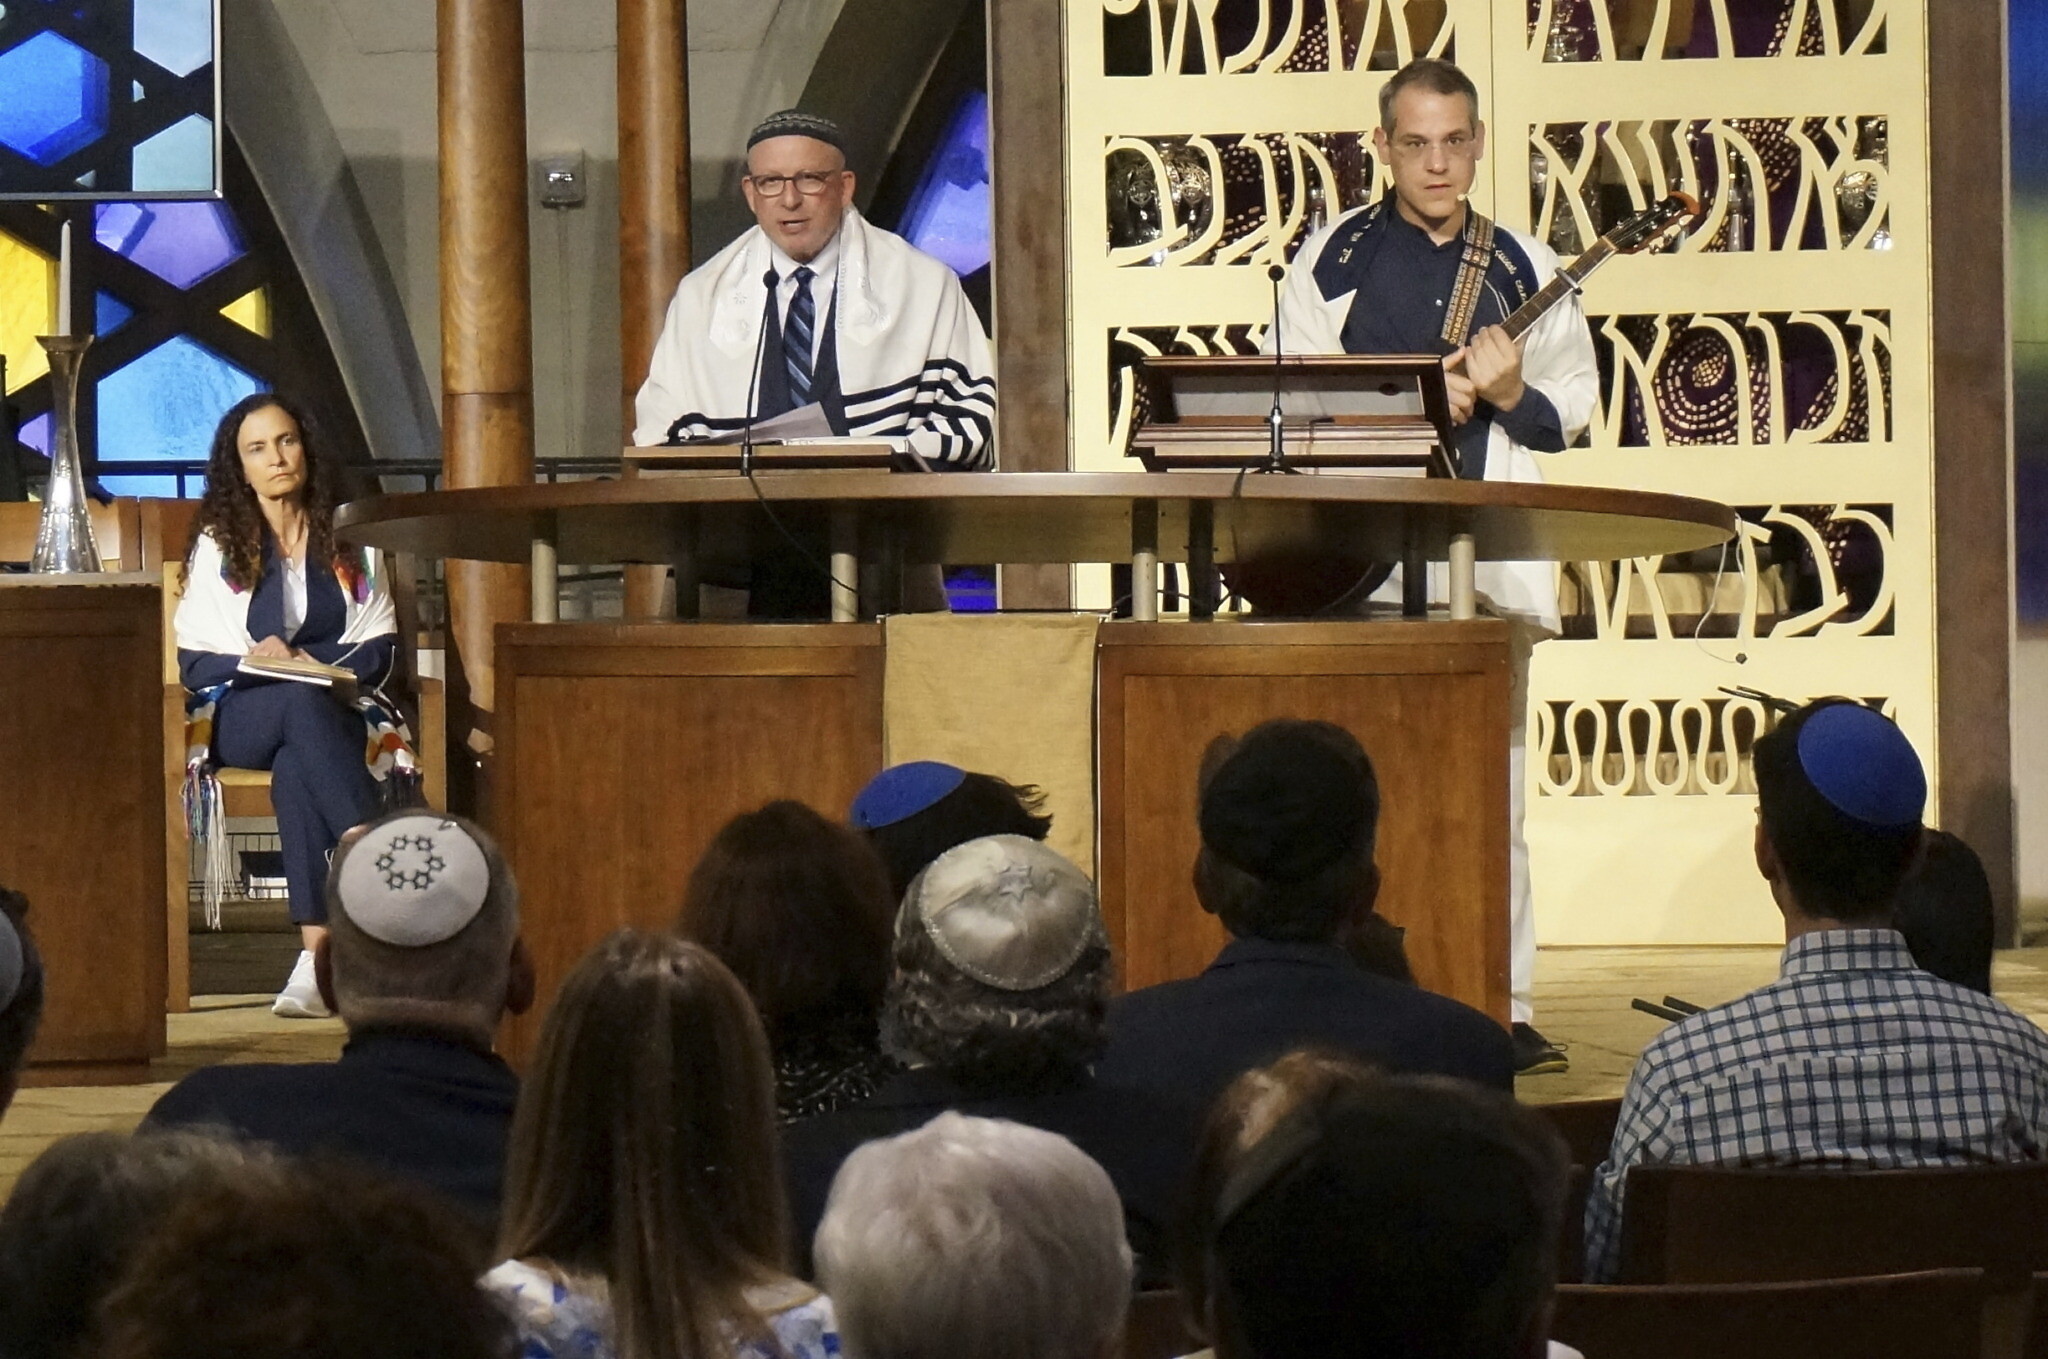 Shabbat Shir Shalom - Temple Beth Shalom